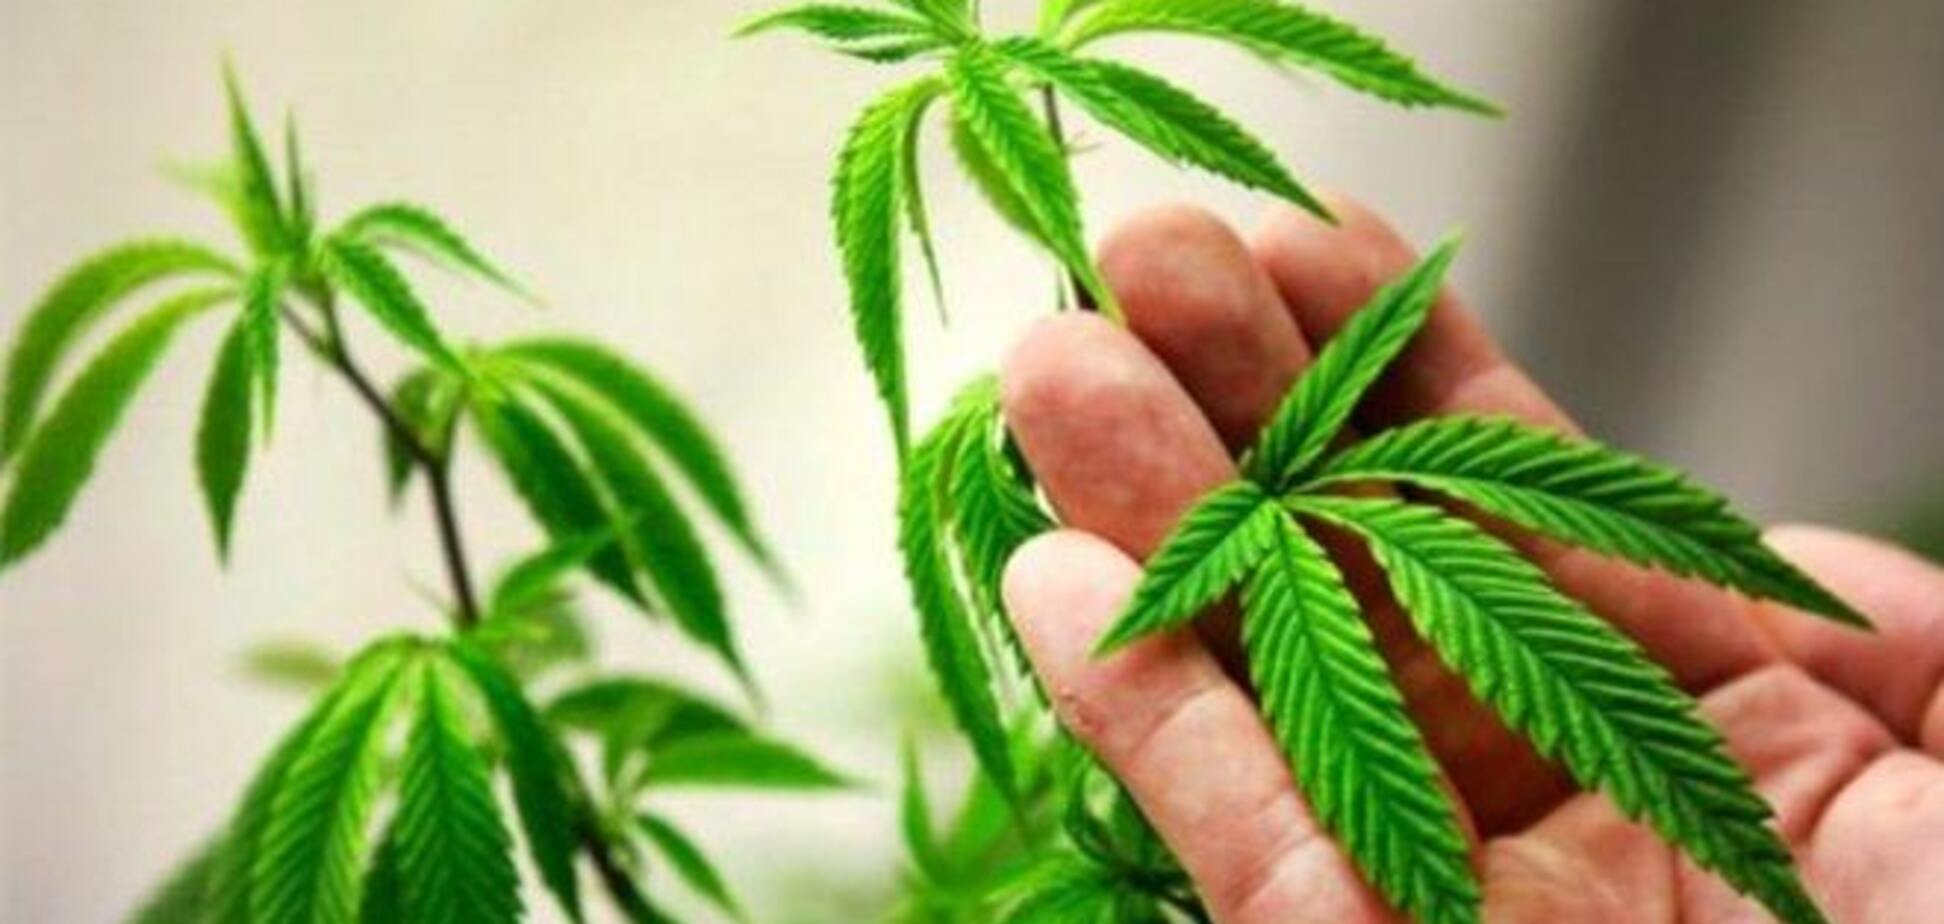 20-й штат США легализовал марихуану